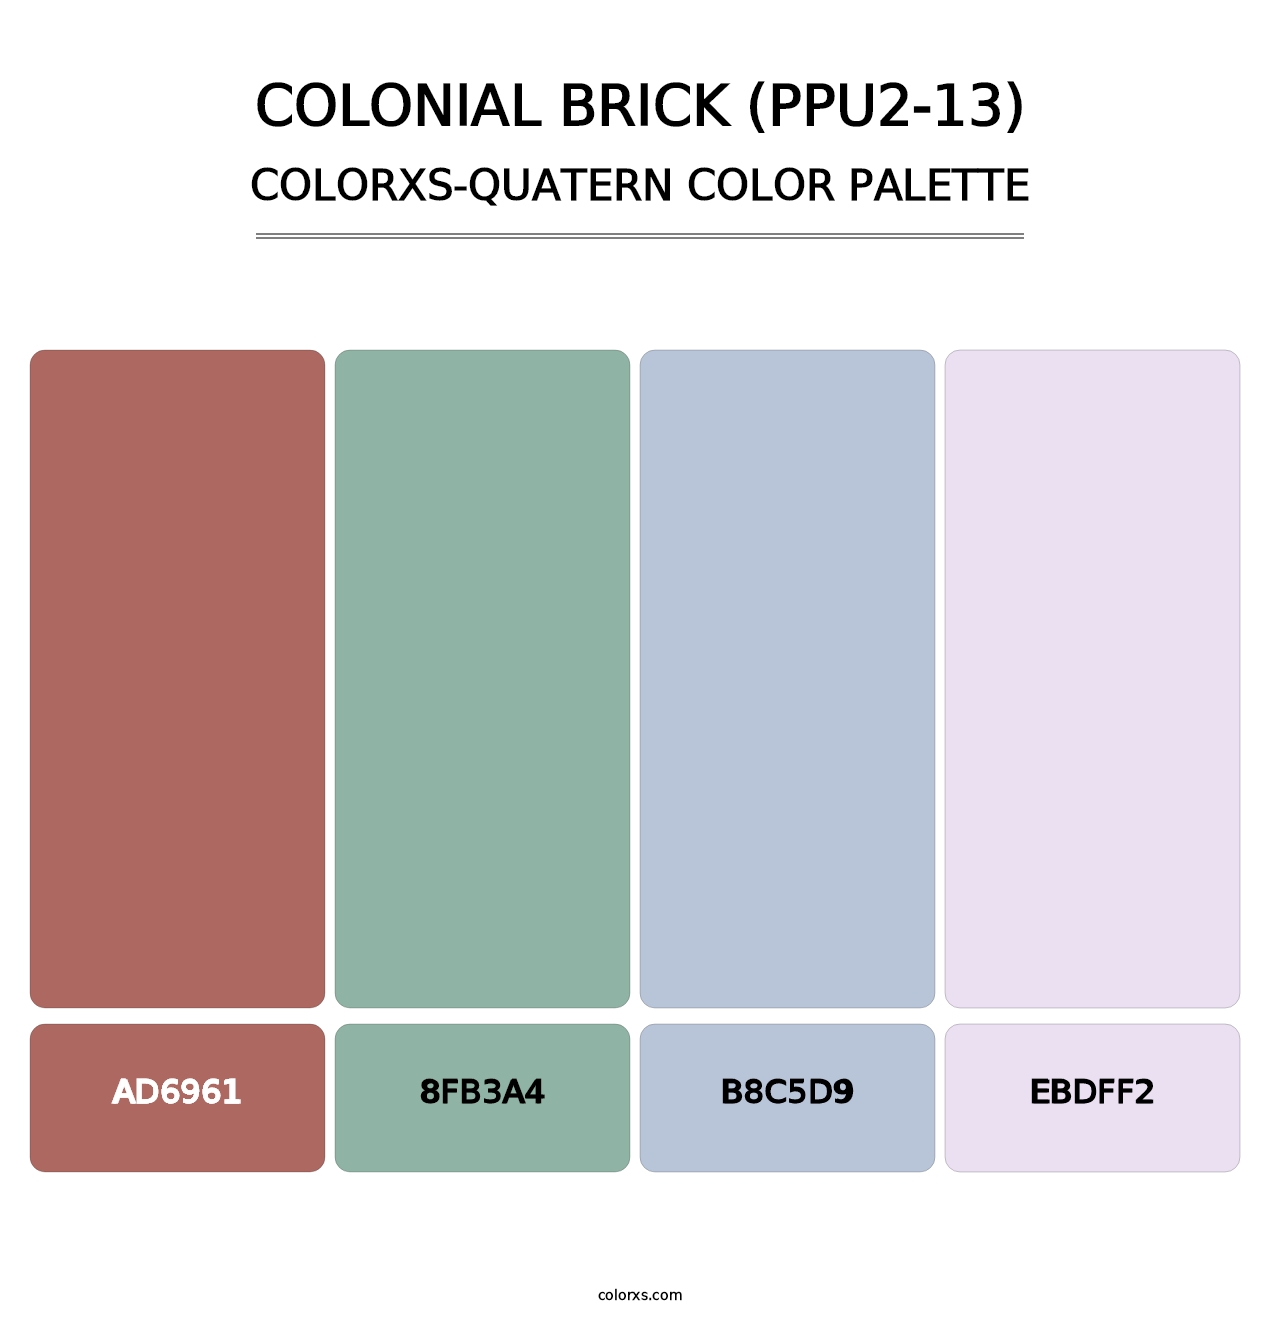 Colonial Brick (PPU2-13) - Colorxs Quatern Palette